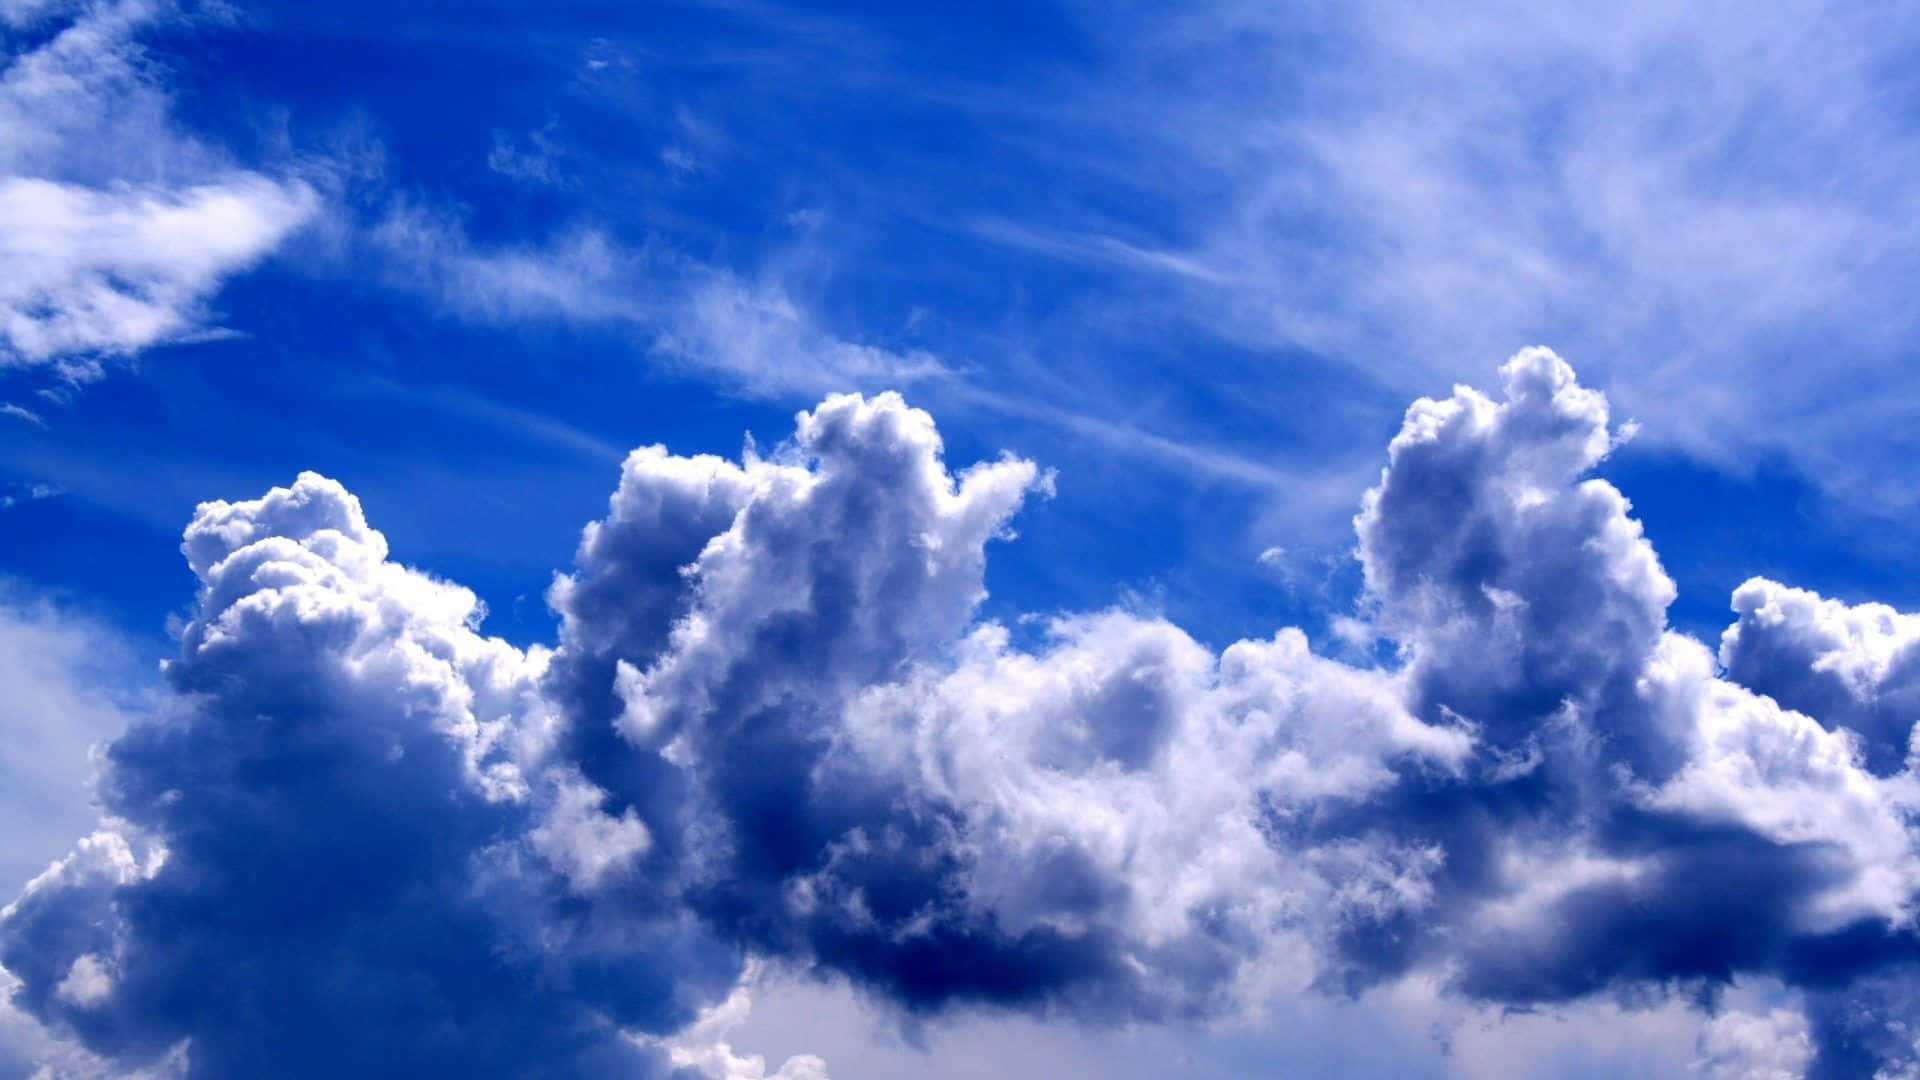 Hoheauflösung Himmel Große Wolken Wallpaper